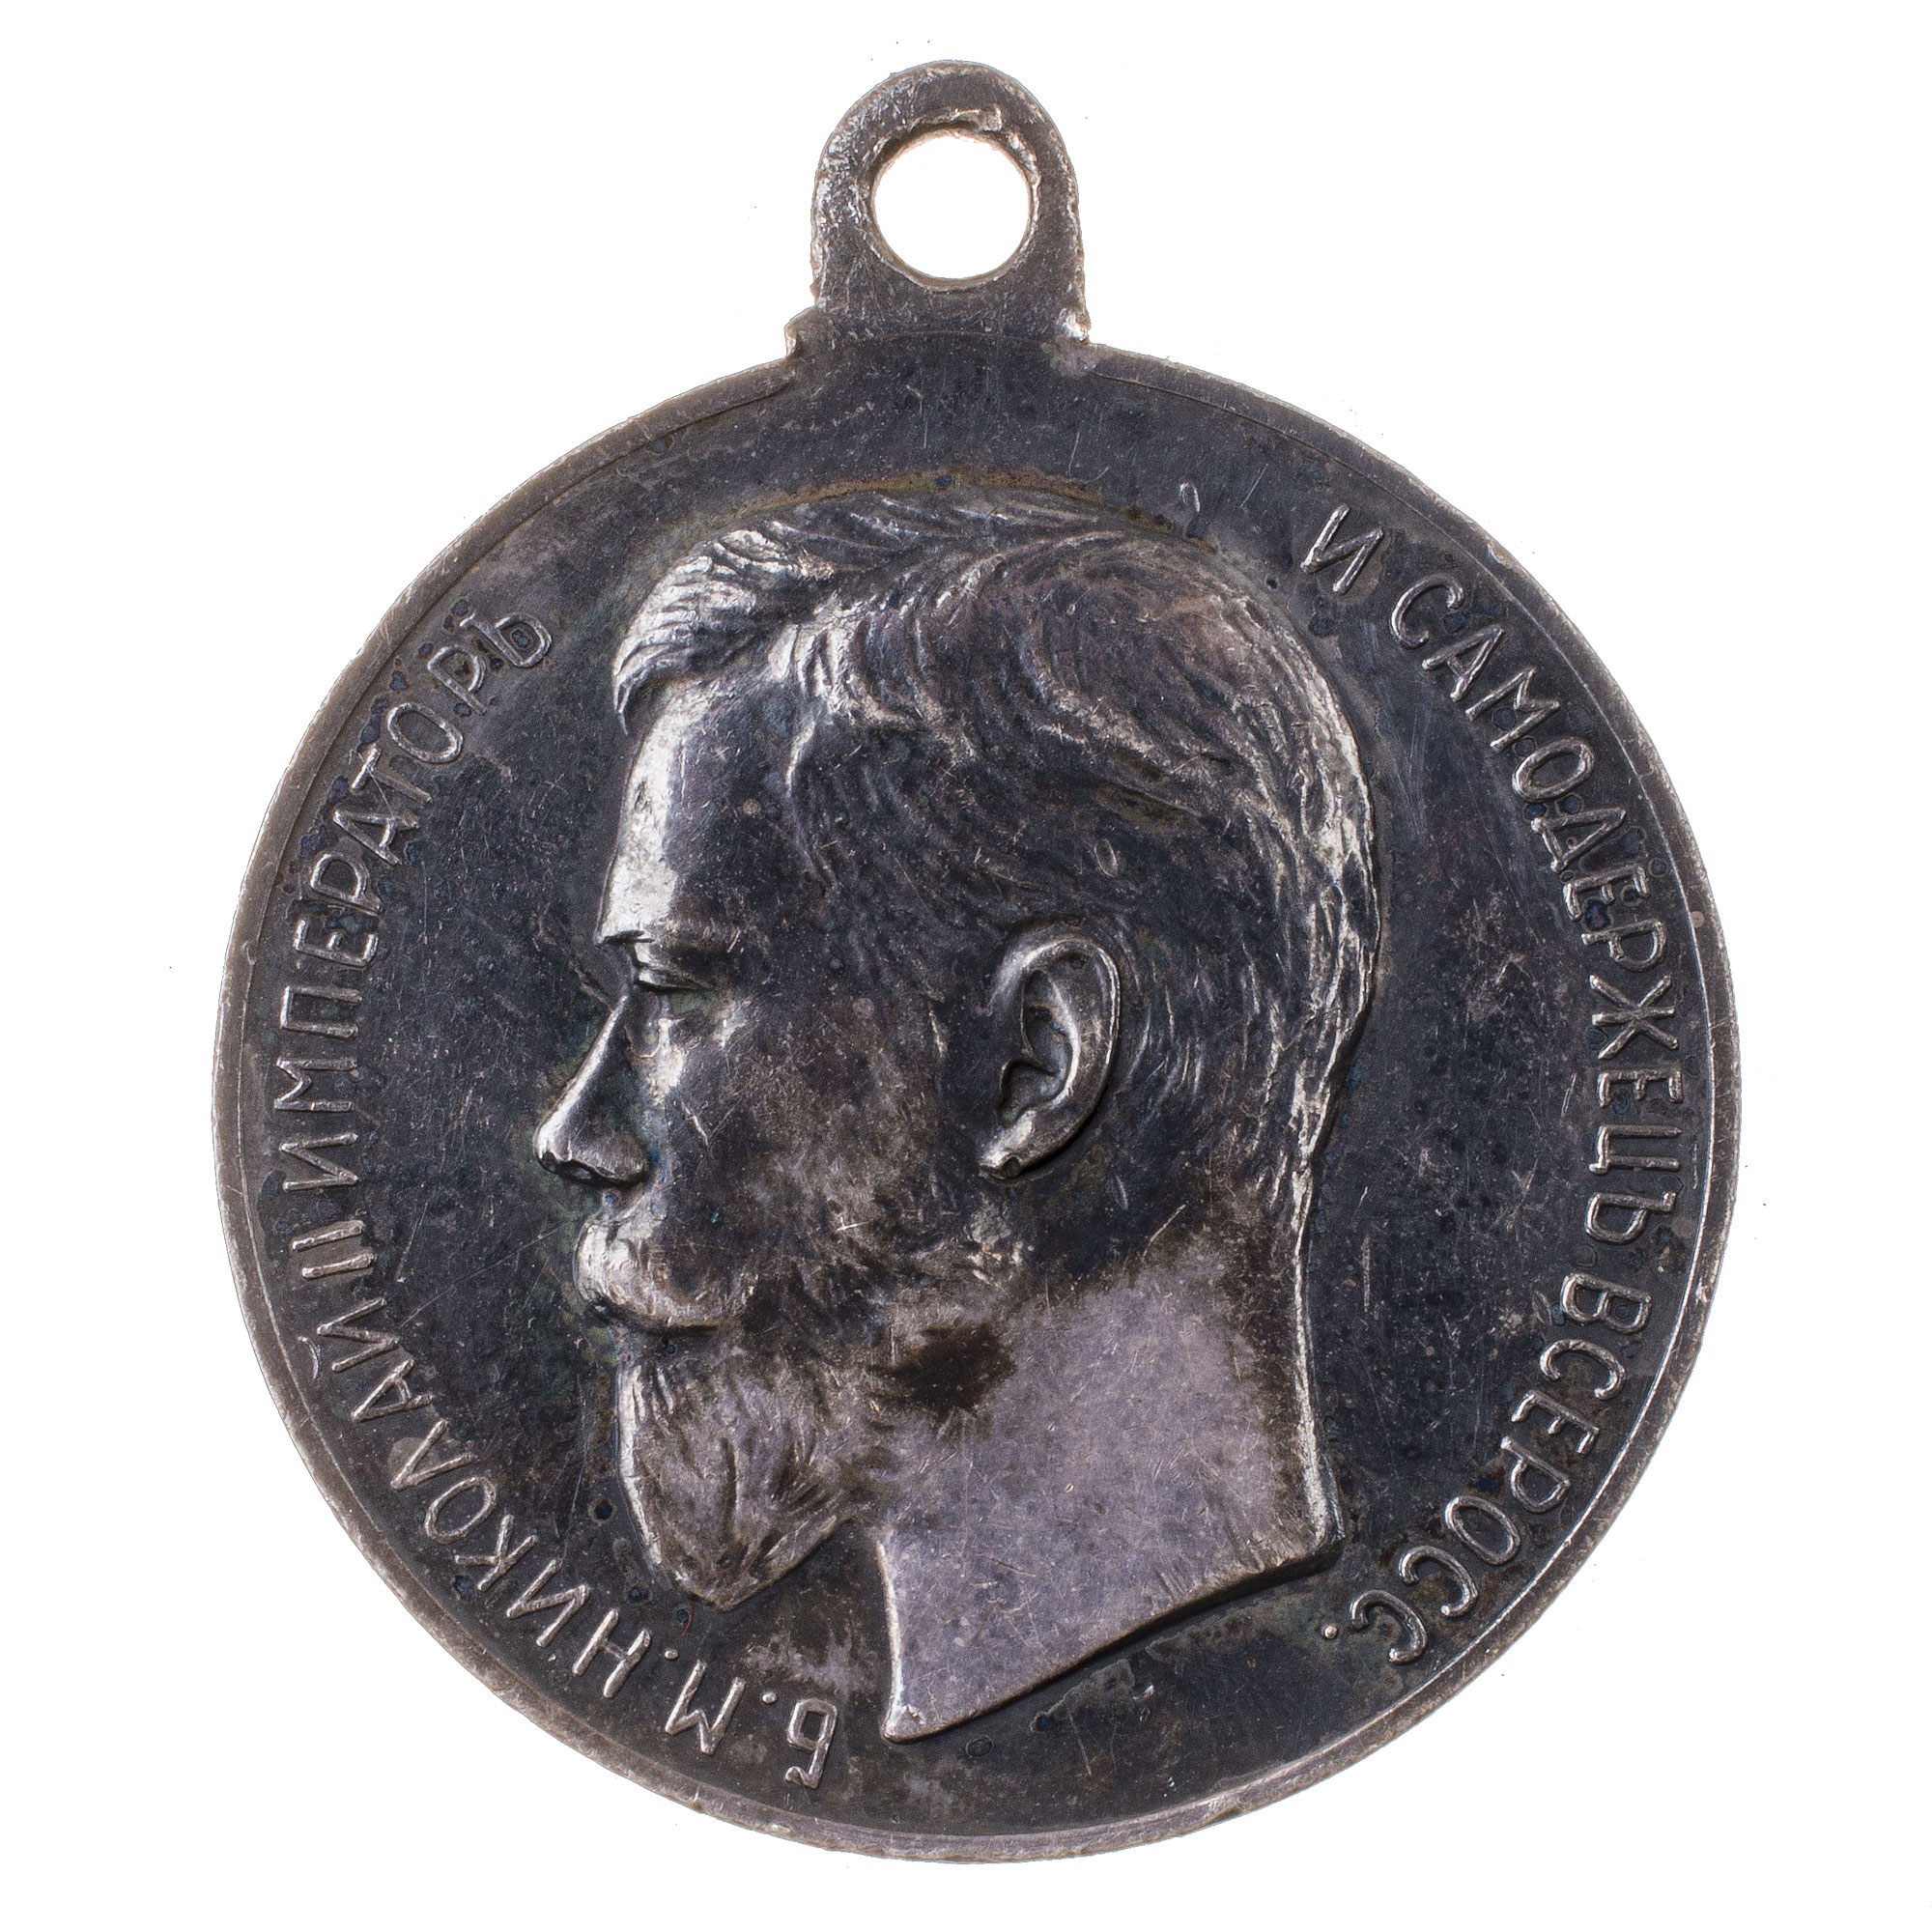 Медаль "За Усердие" с портретом Императора Николая II (образца 1895 г). Серебро.